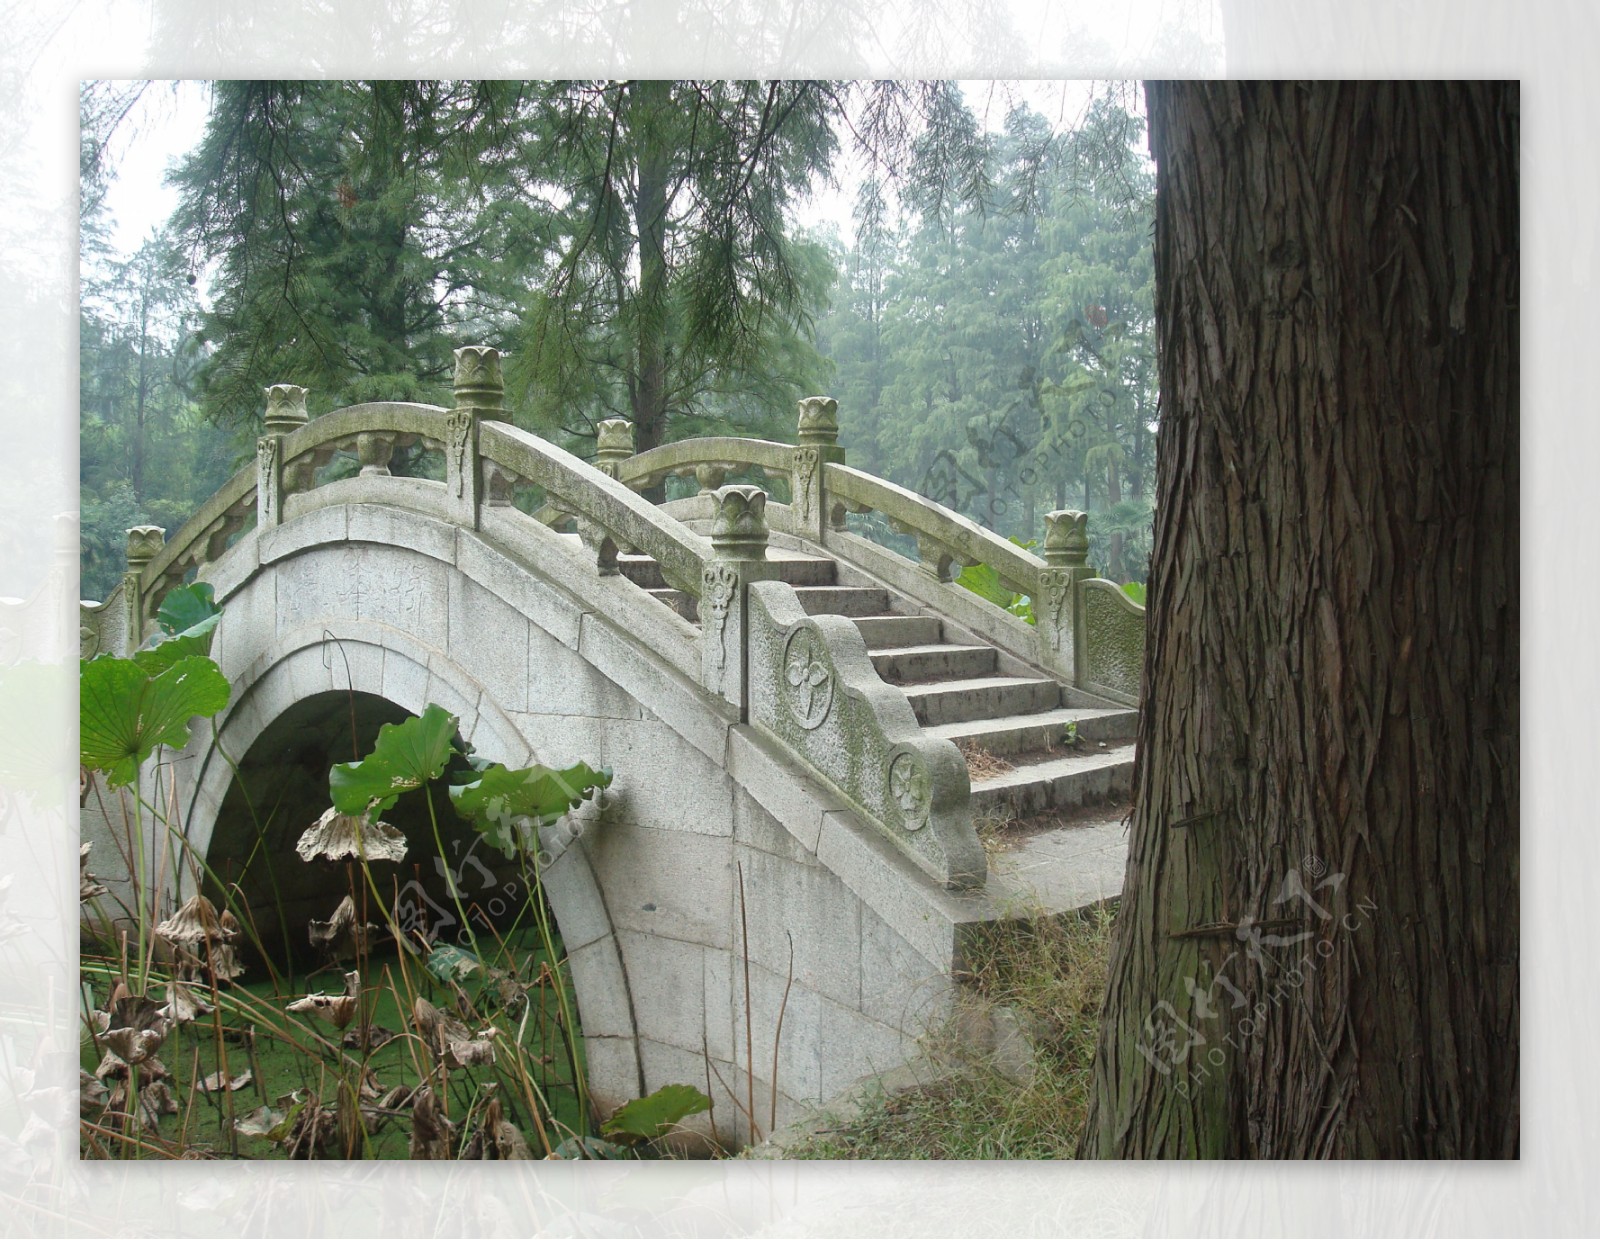 【寻找泉州世遗的中国之最】安平桥：中国现存最长的跨海梁式古石桥_杭州网